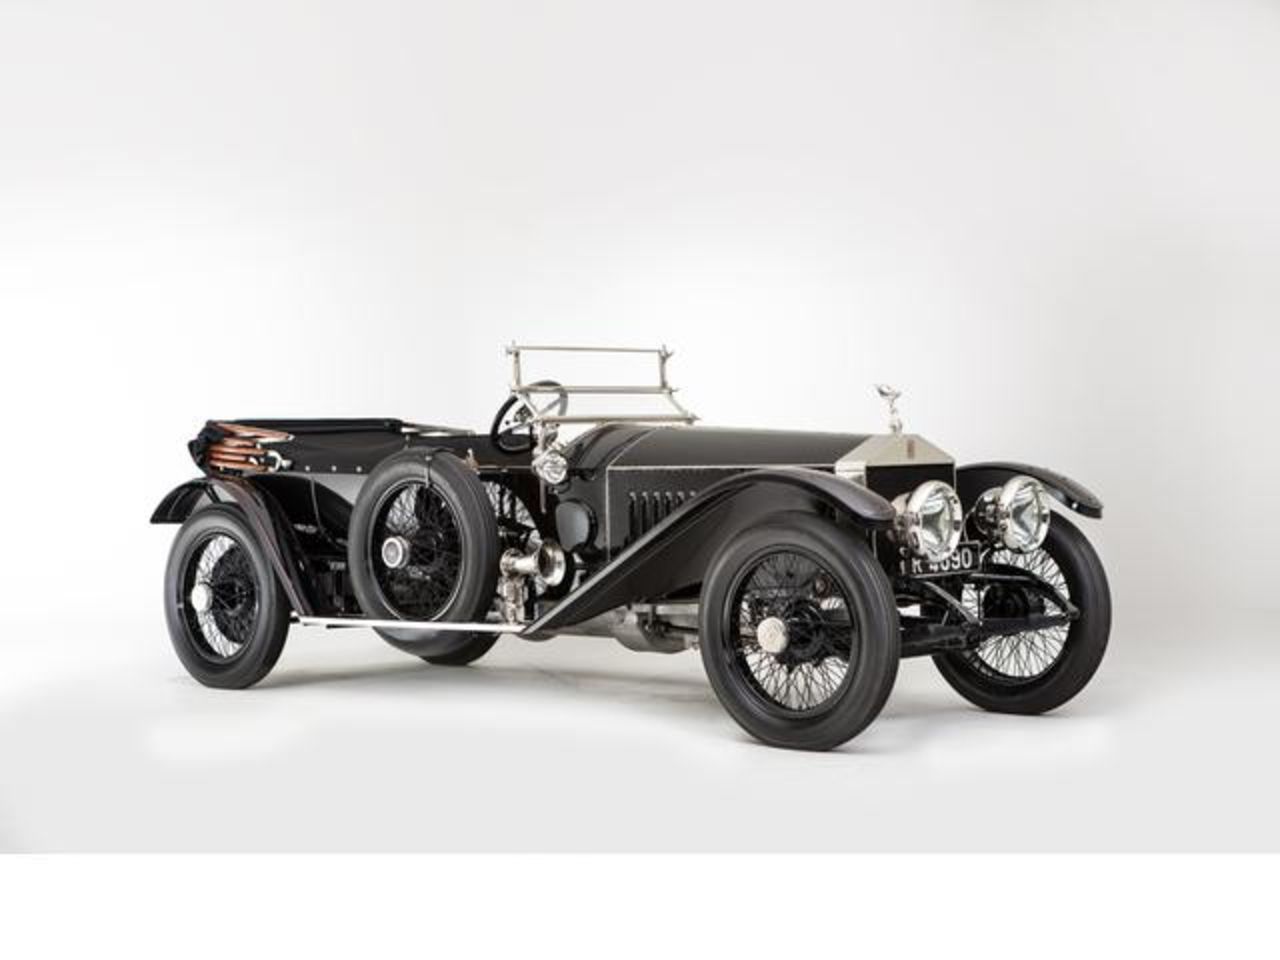 El Rolls Royce Silver Ghost de 101 años se vendió el domingo por 1,36 millones de dólares. Cuando se fabricó este automóvil por primera vez en 1912, la compañía publicitó su capacidad de realizar el viaje redondo de 800 millas (1.287,4 kilómetros) desde Londres a Edimburgo y de vuelta. 